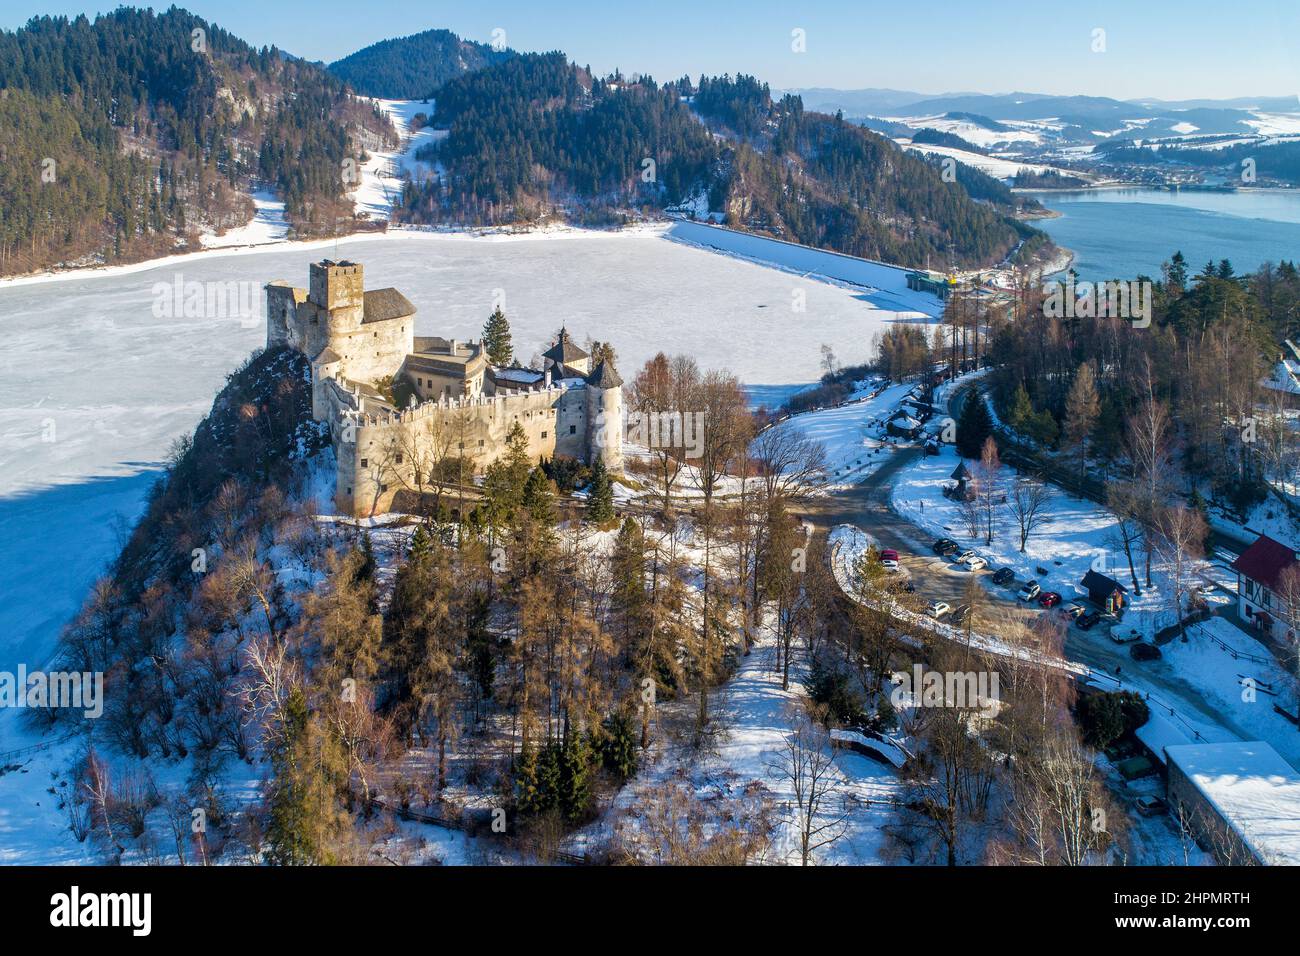 Polonia. Castillo medieval en Niedzica, que data del siglo 14th (castillo superior) en invierno. Lago Zorsztyn artificial congelado en el río Dunajec y una presa Foto de stock